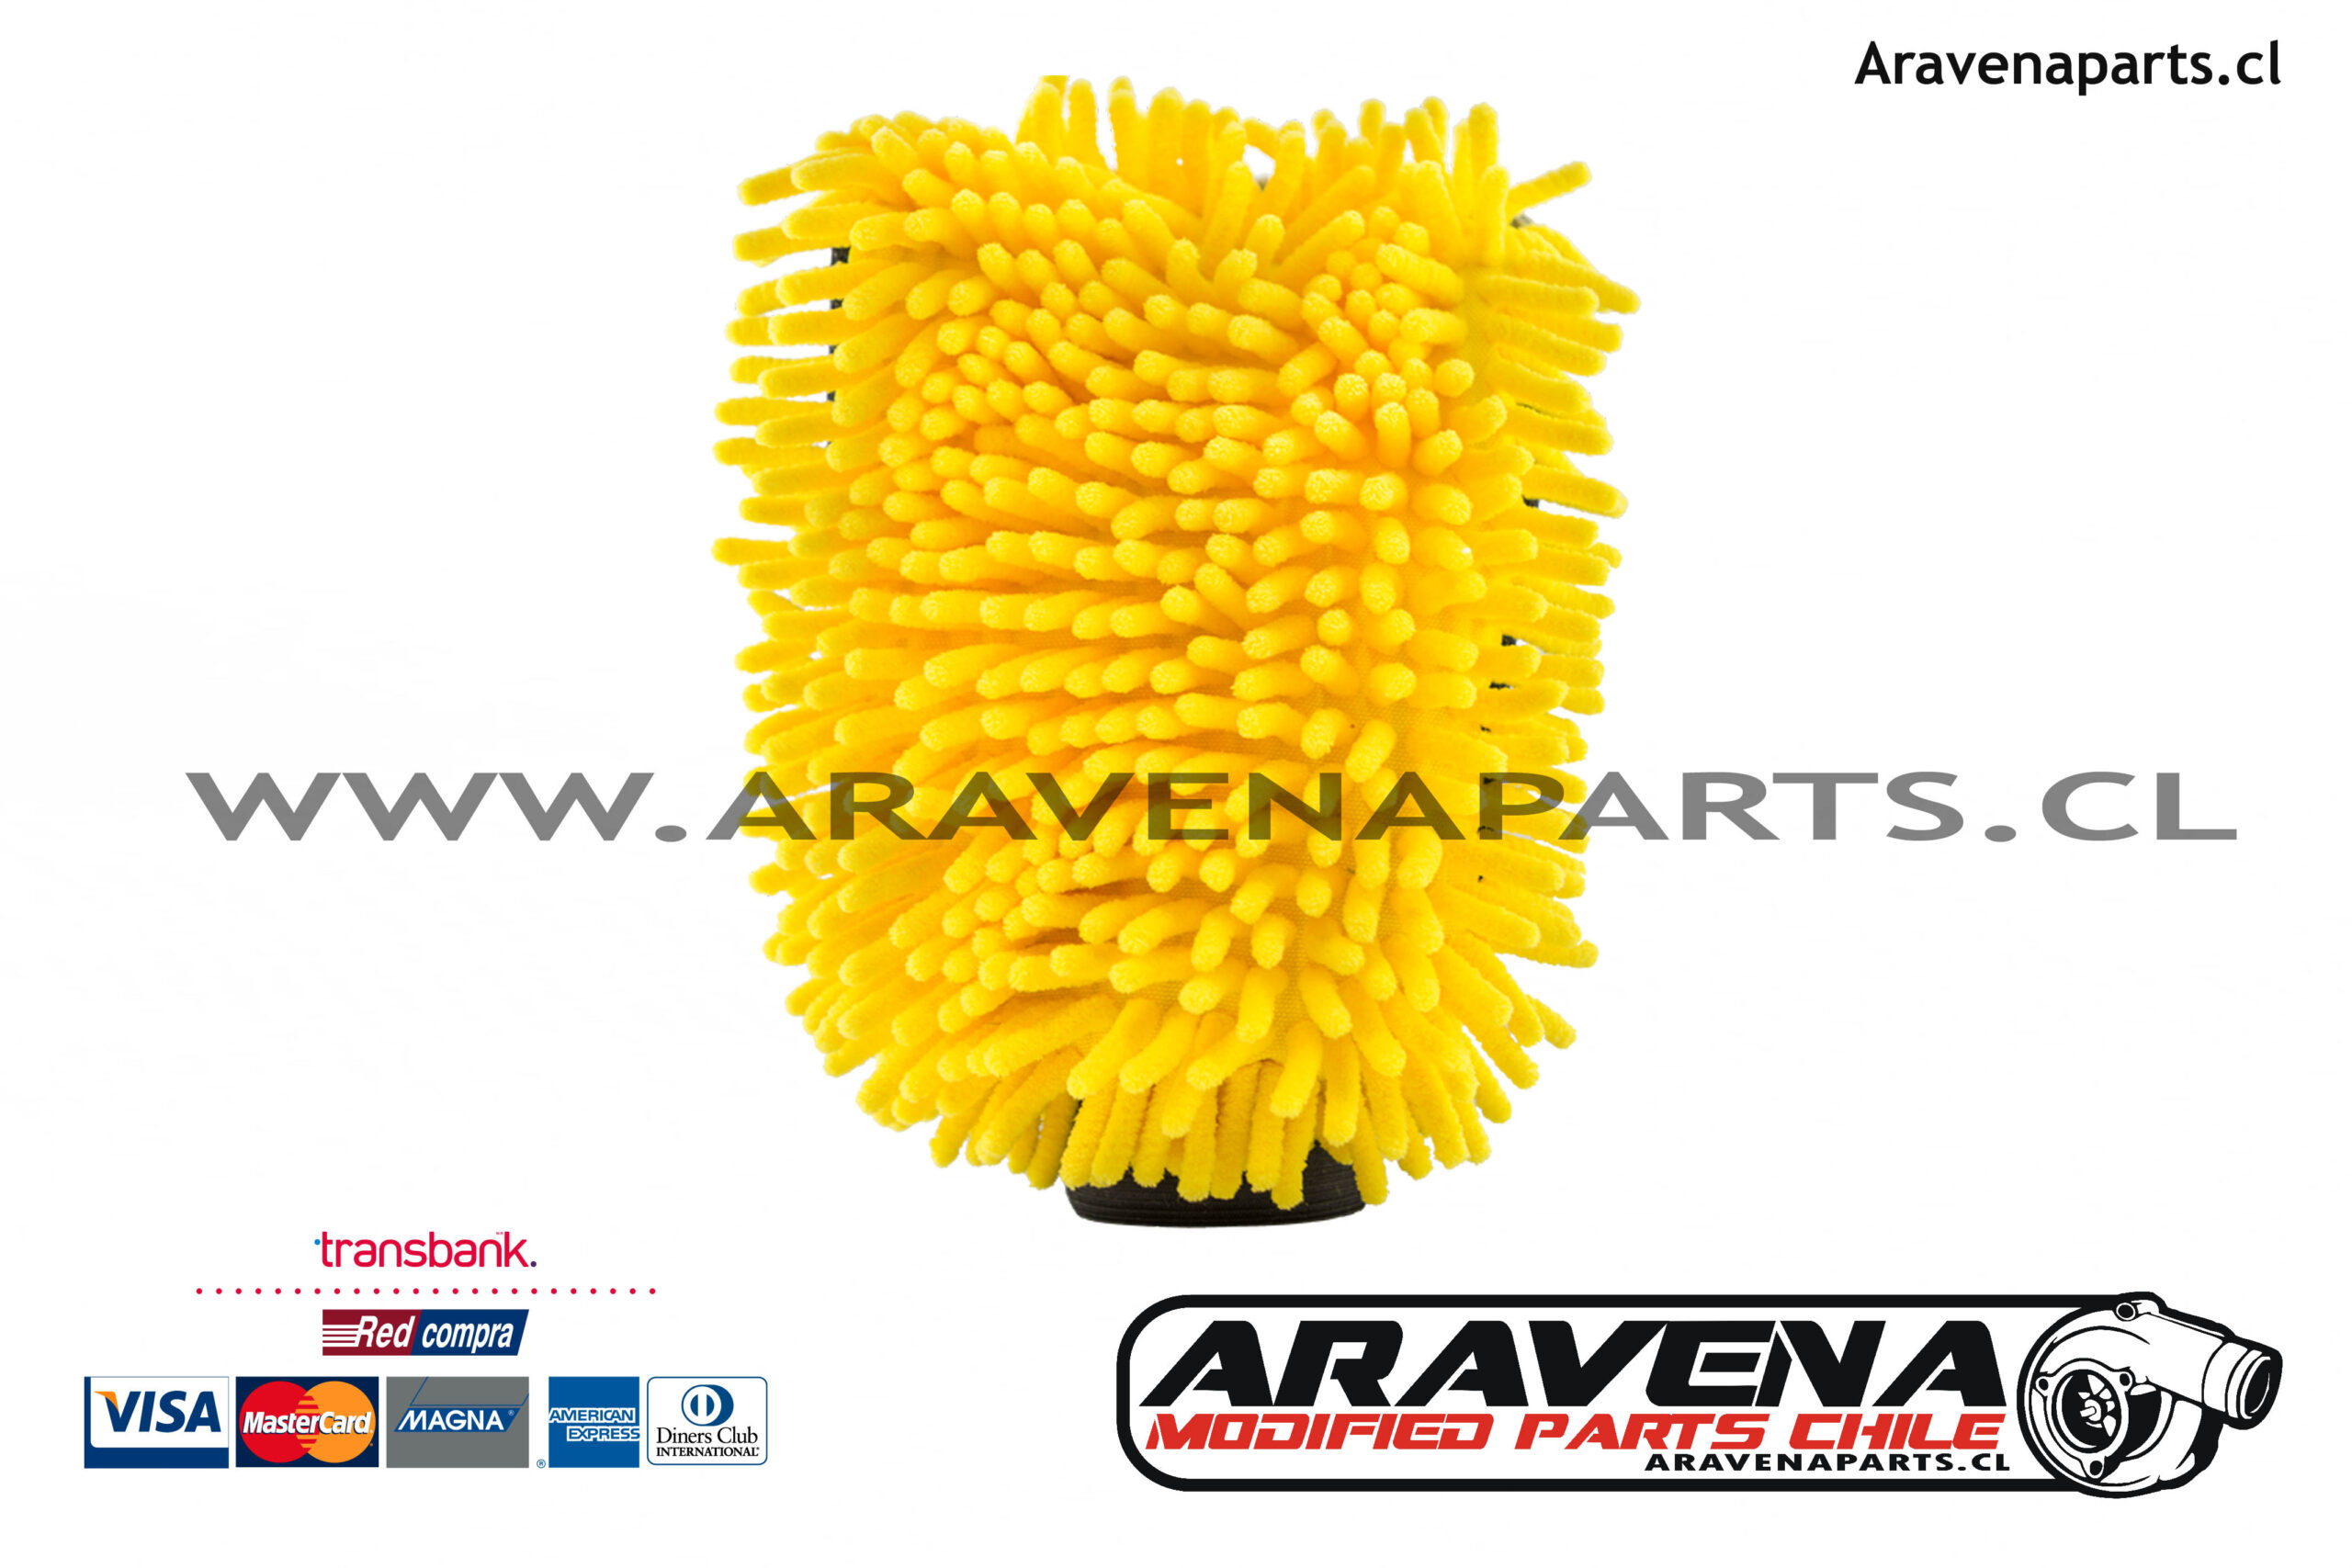 Chemical Guys Butter Wet Wax 16oz - Aravena Parts